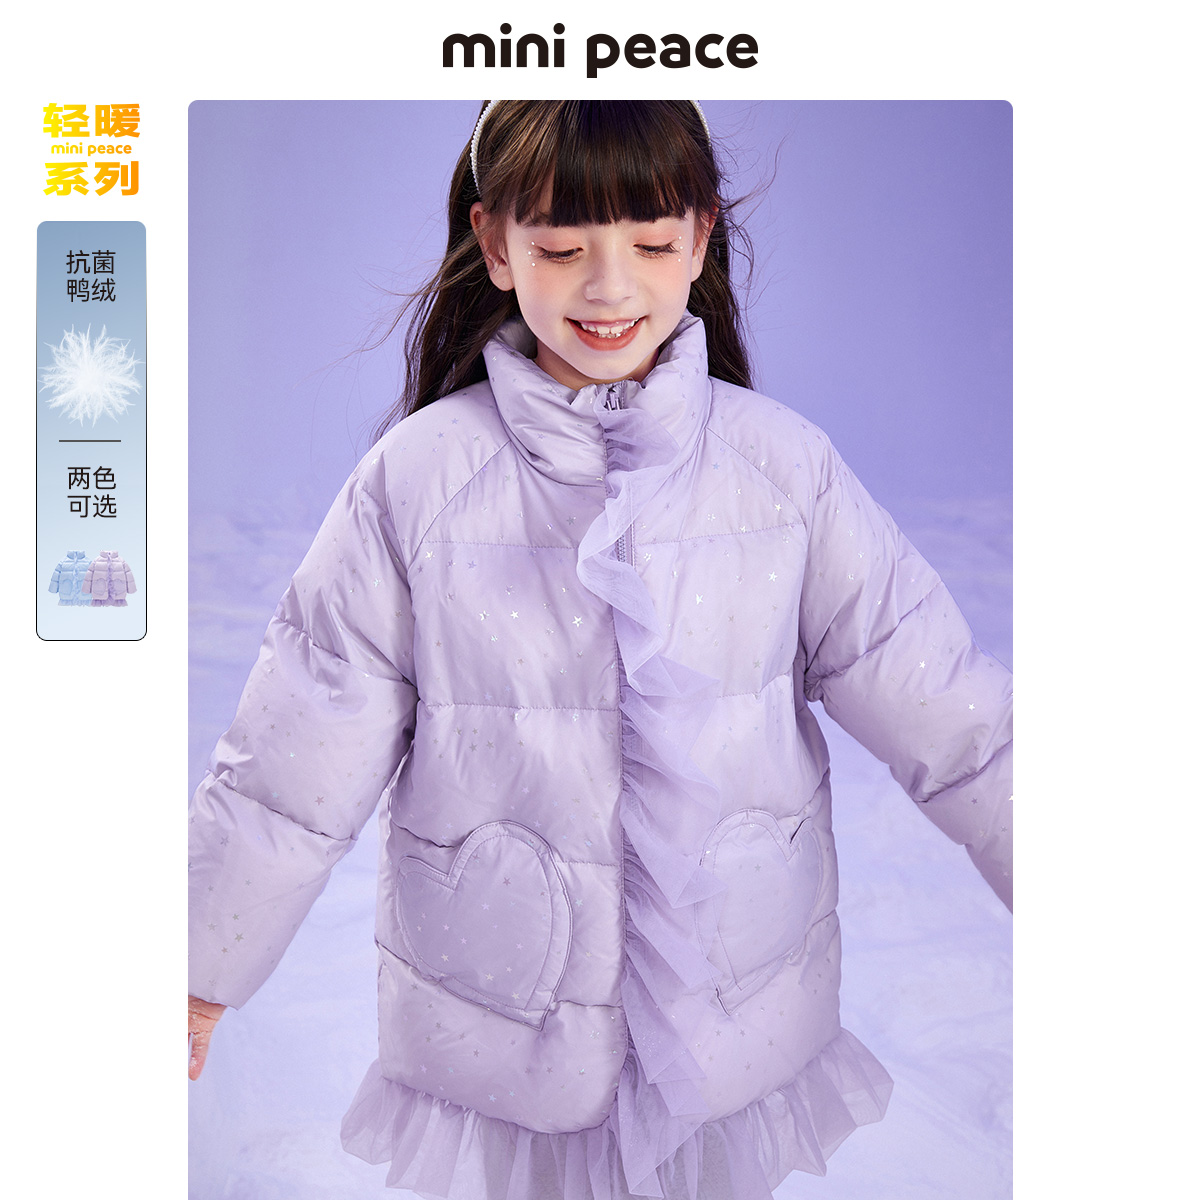  minipeace羽绒服